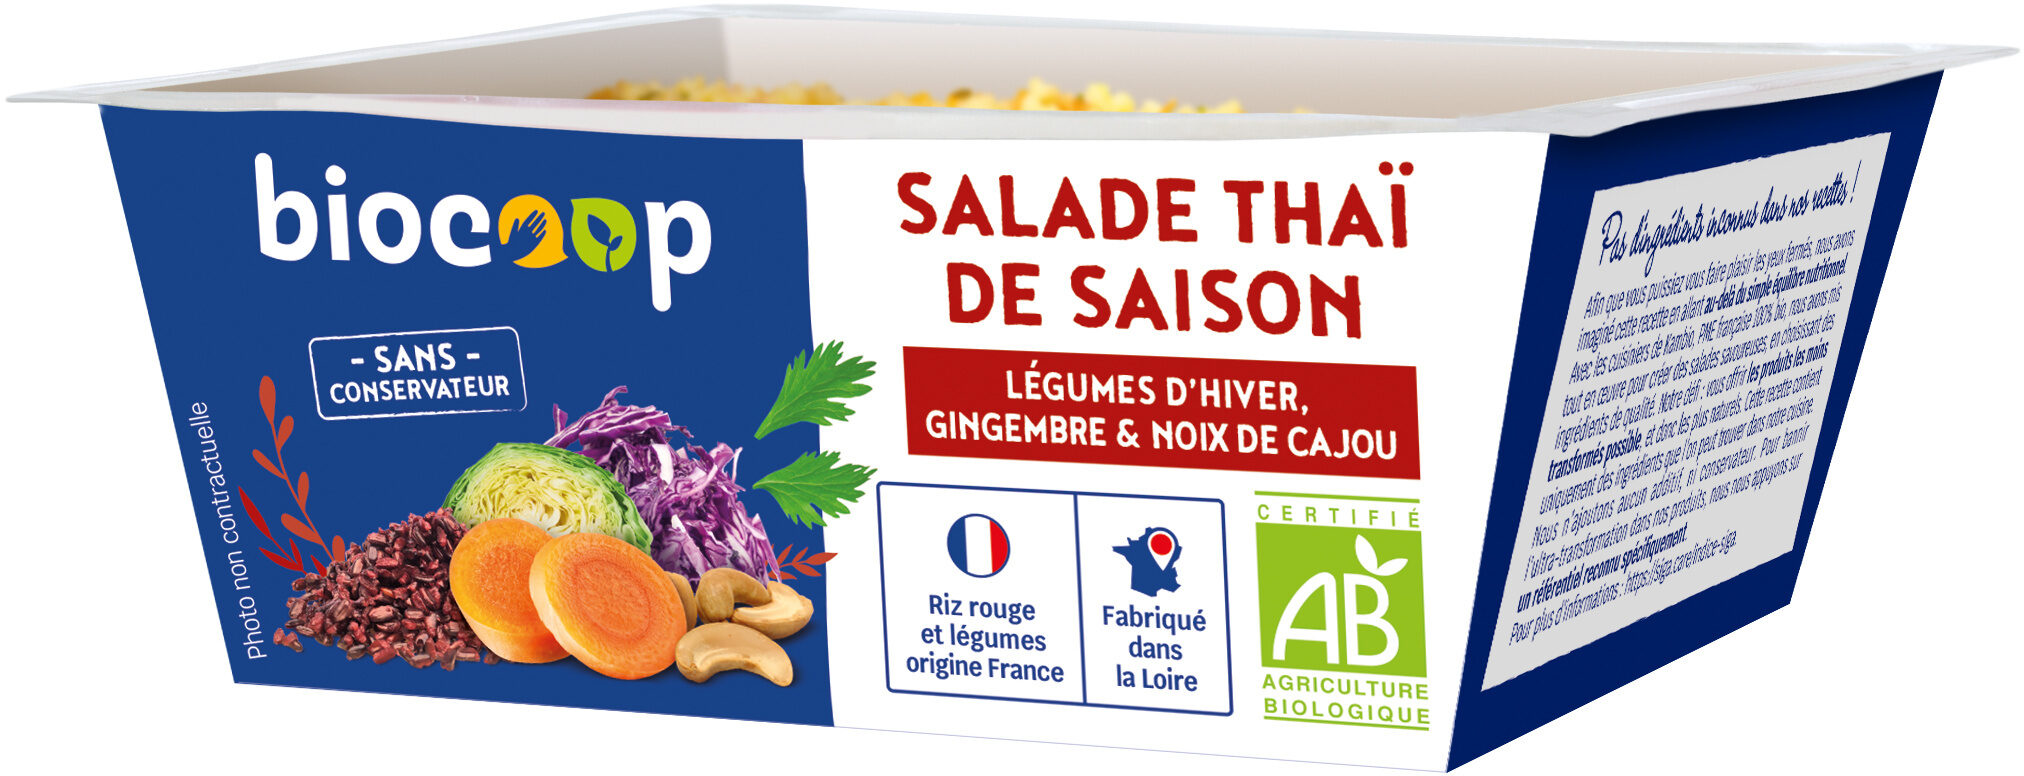 Salade thaï hiver 160g CC - Product - fr